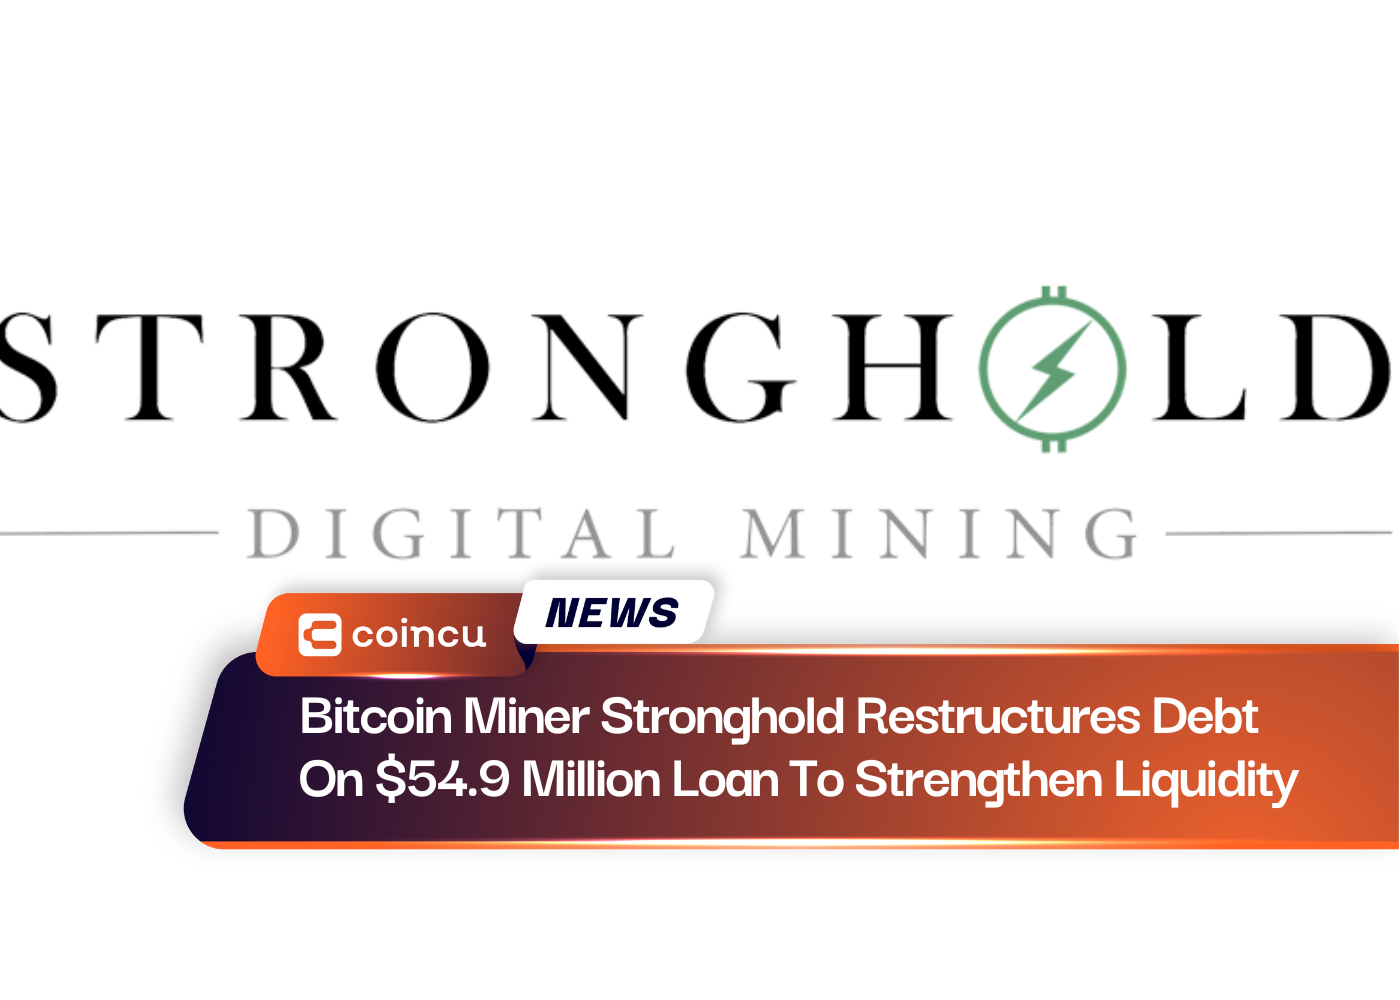 तरलता को मजबूत करने के लिए बिटकॉइन माइनर स्ट्रॉन्गहोल्ड ने $54.9 मिलियन के ऋण पर ऋण का पुनर्गठन किया